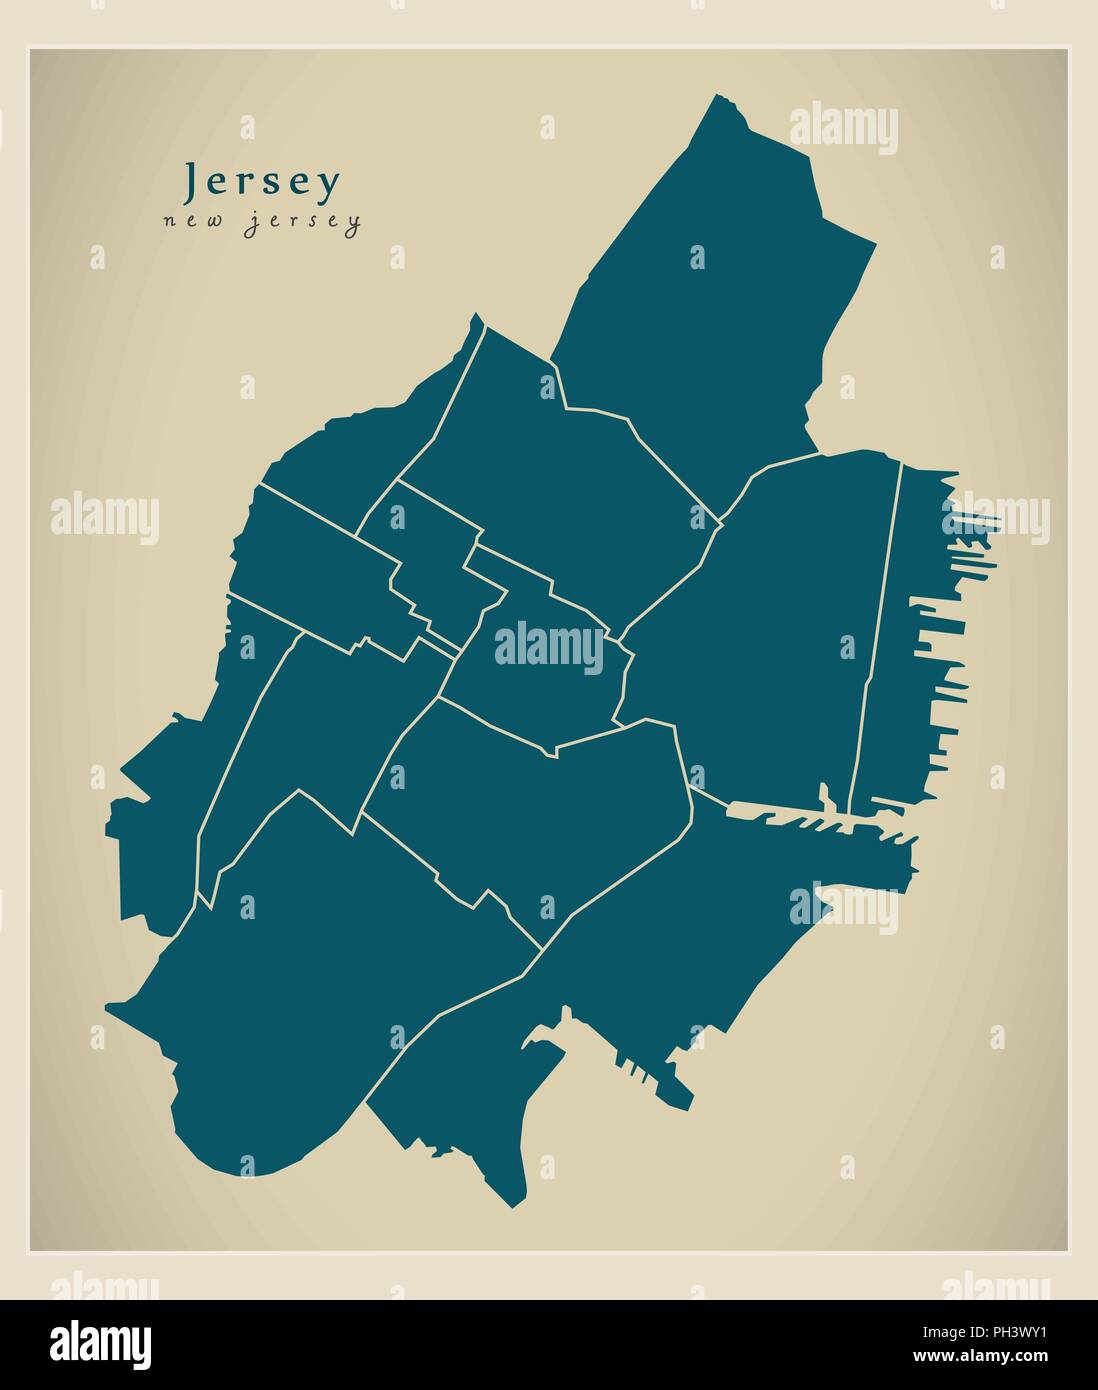 Città moderna mappa - Jersey New Jersey città degli Stati Uniti con i quartieri Illustrazione Vettoriale